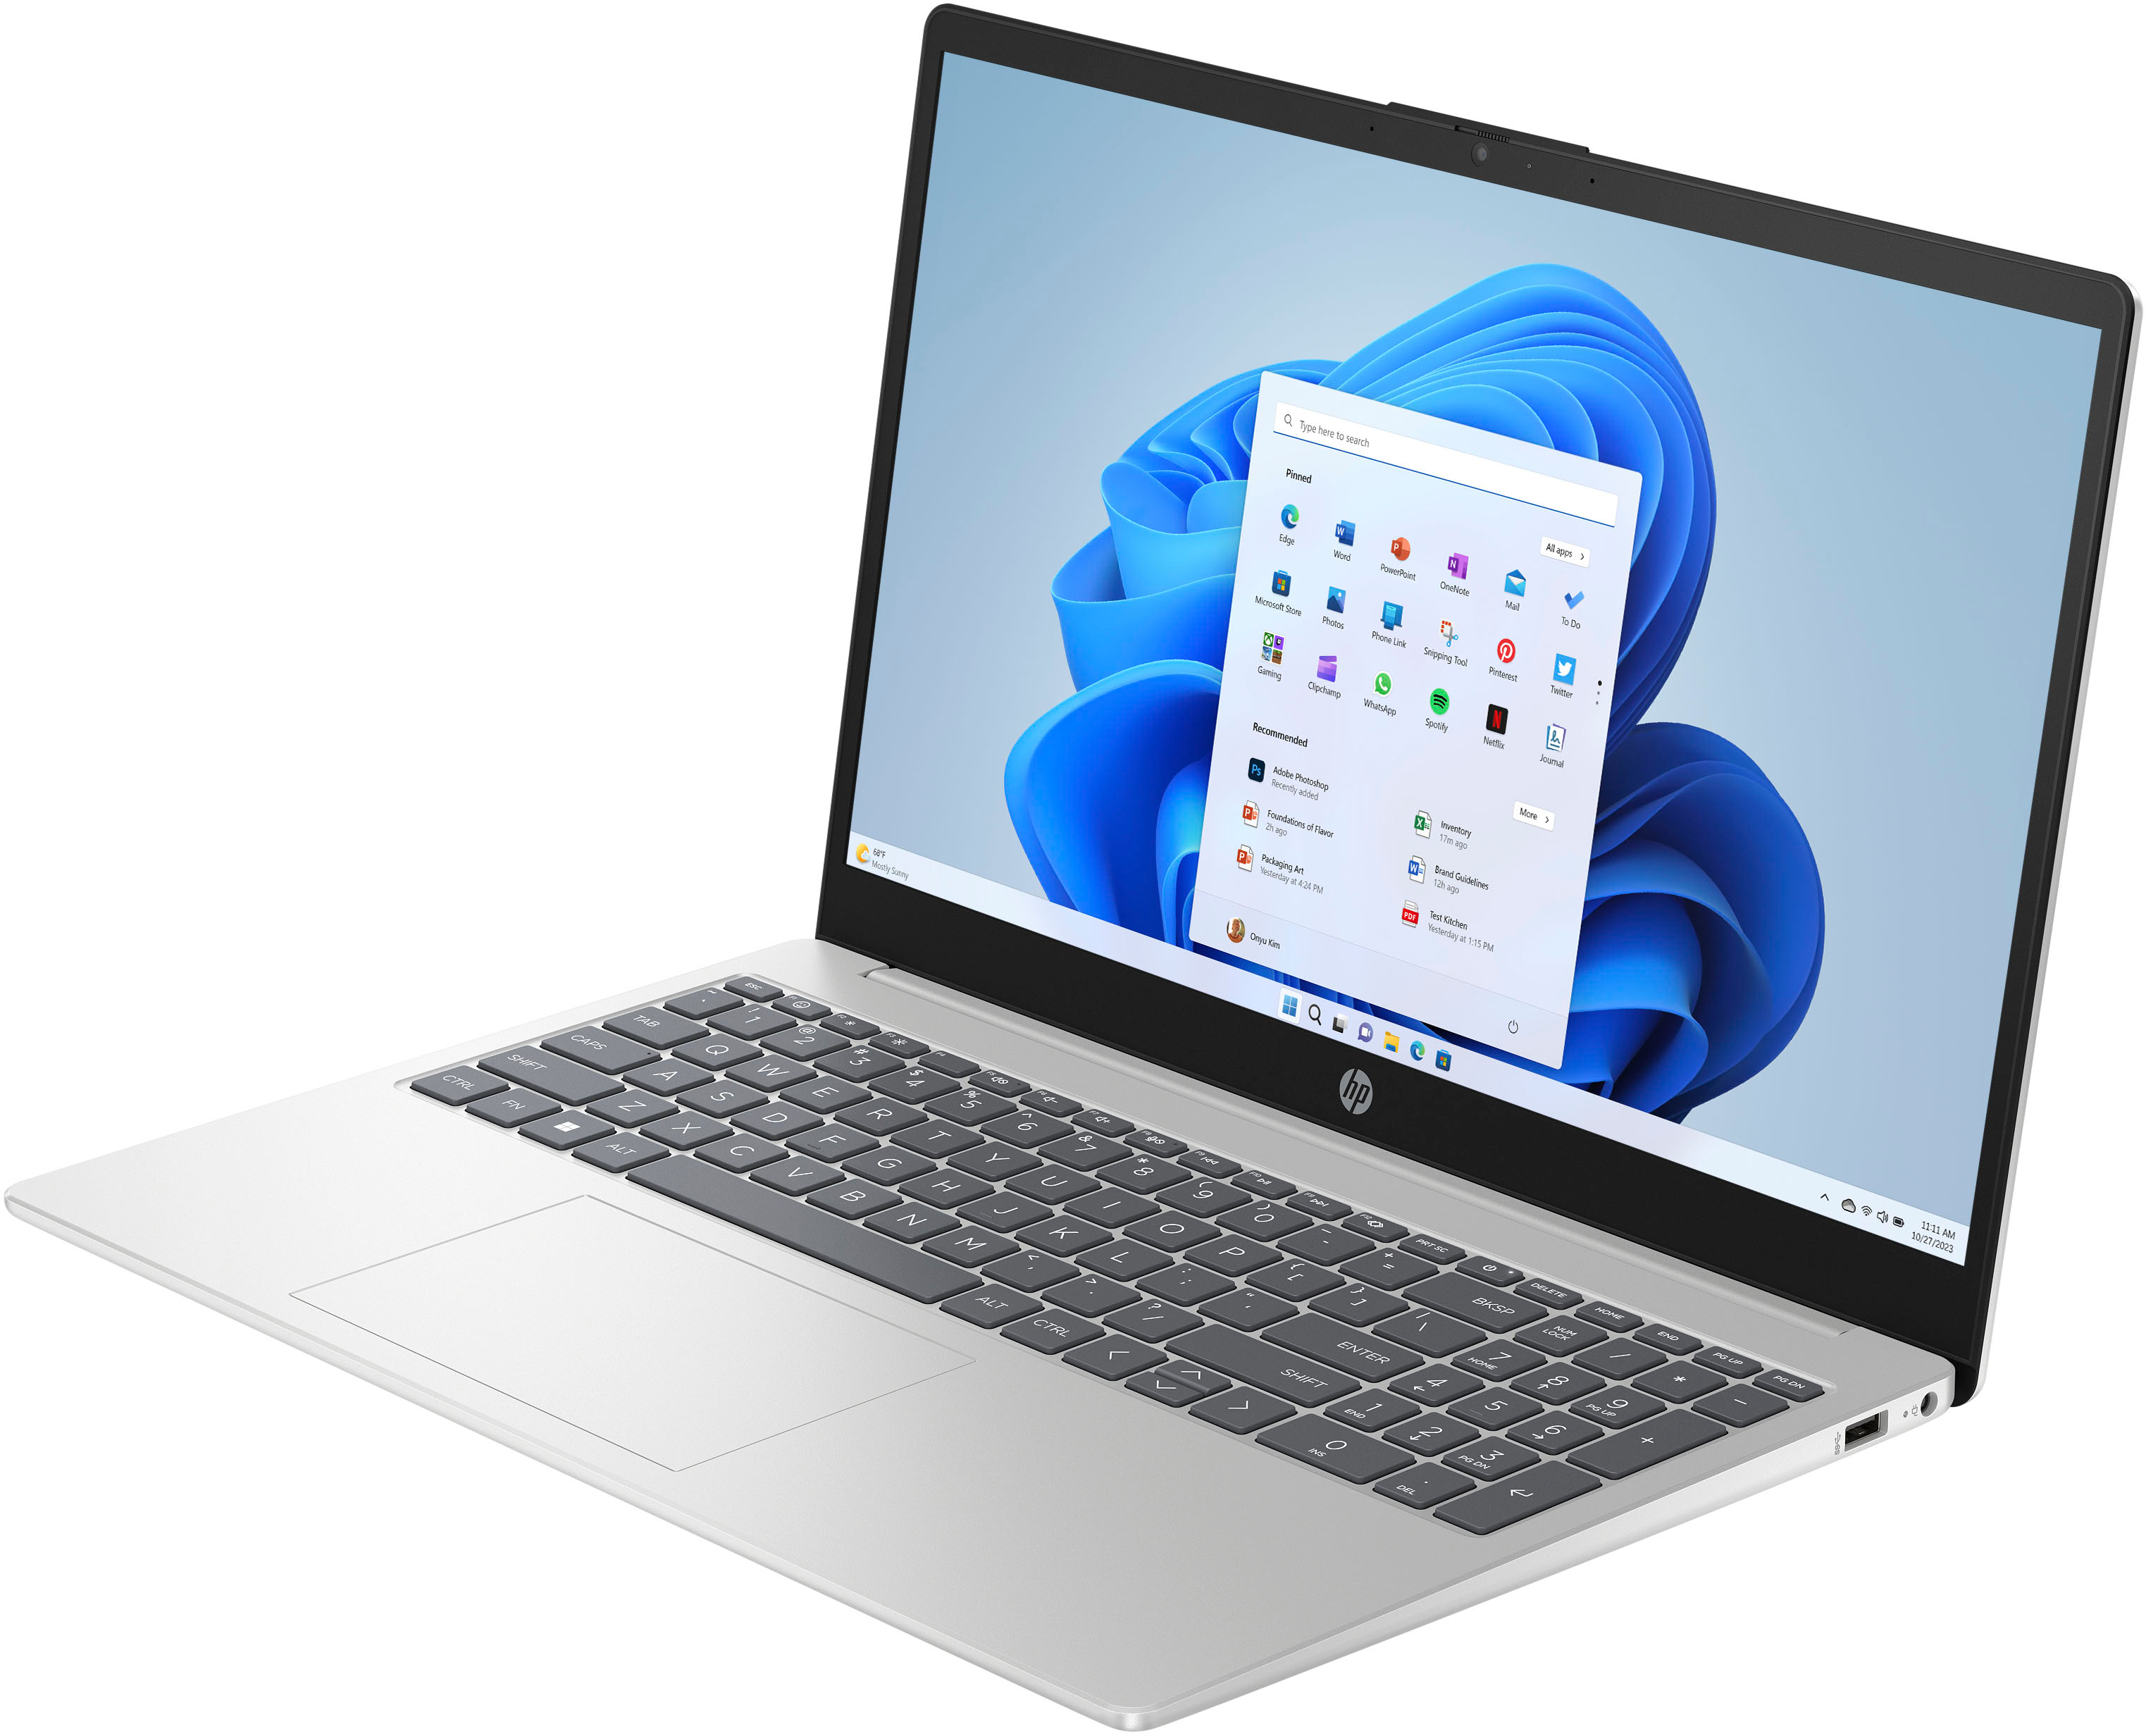 Grey 15.6 inch Hp laptop with 4gb ram, 512 gb storage